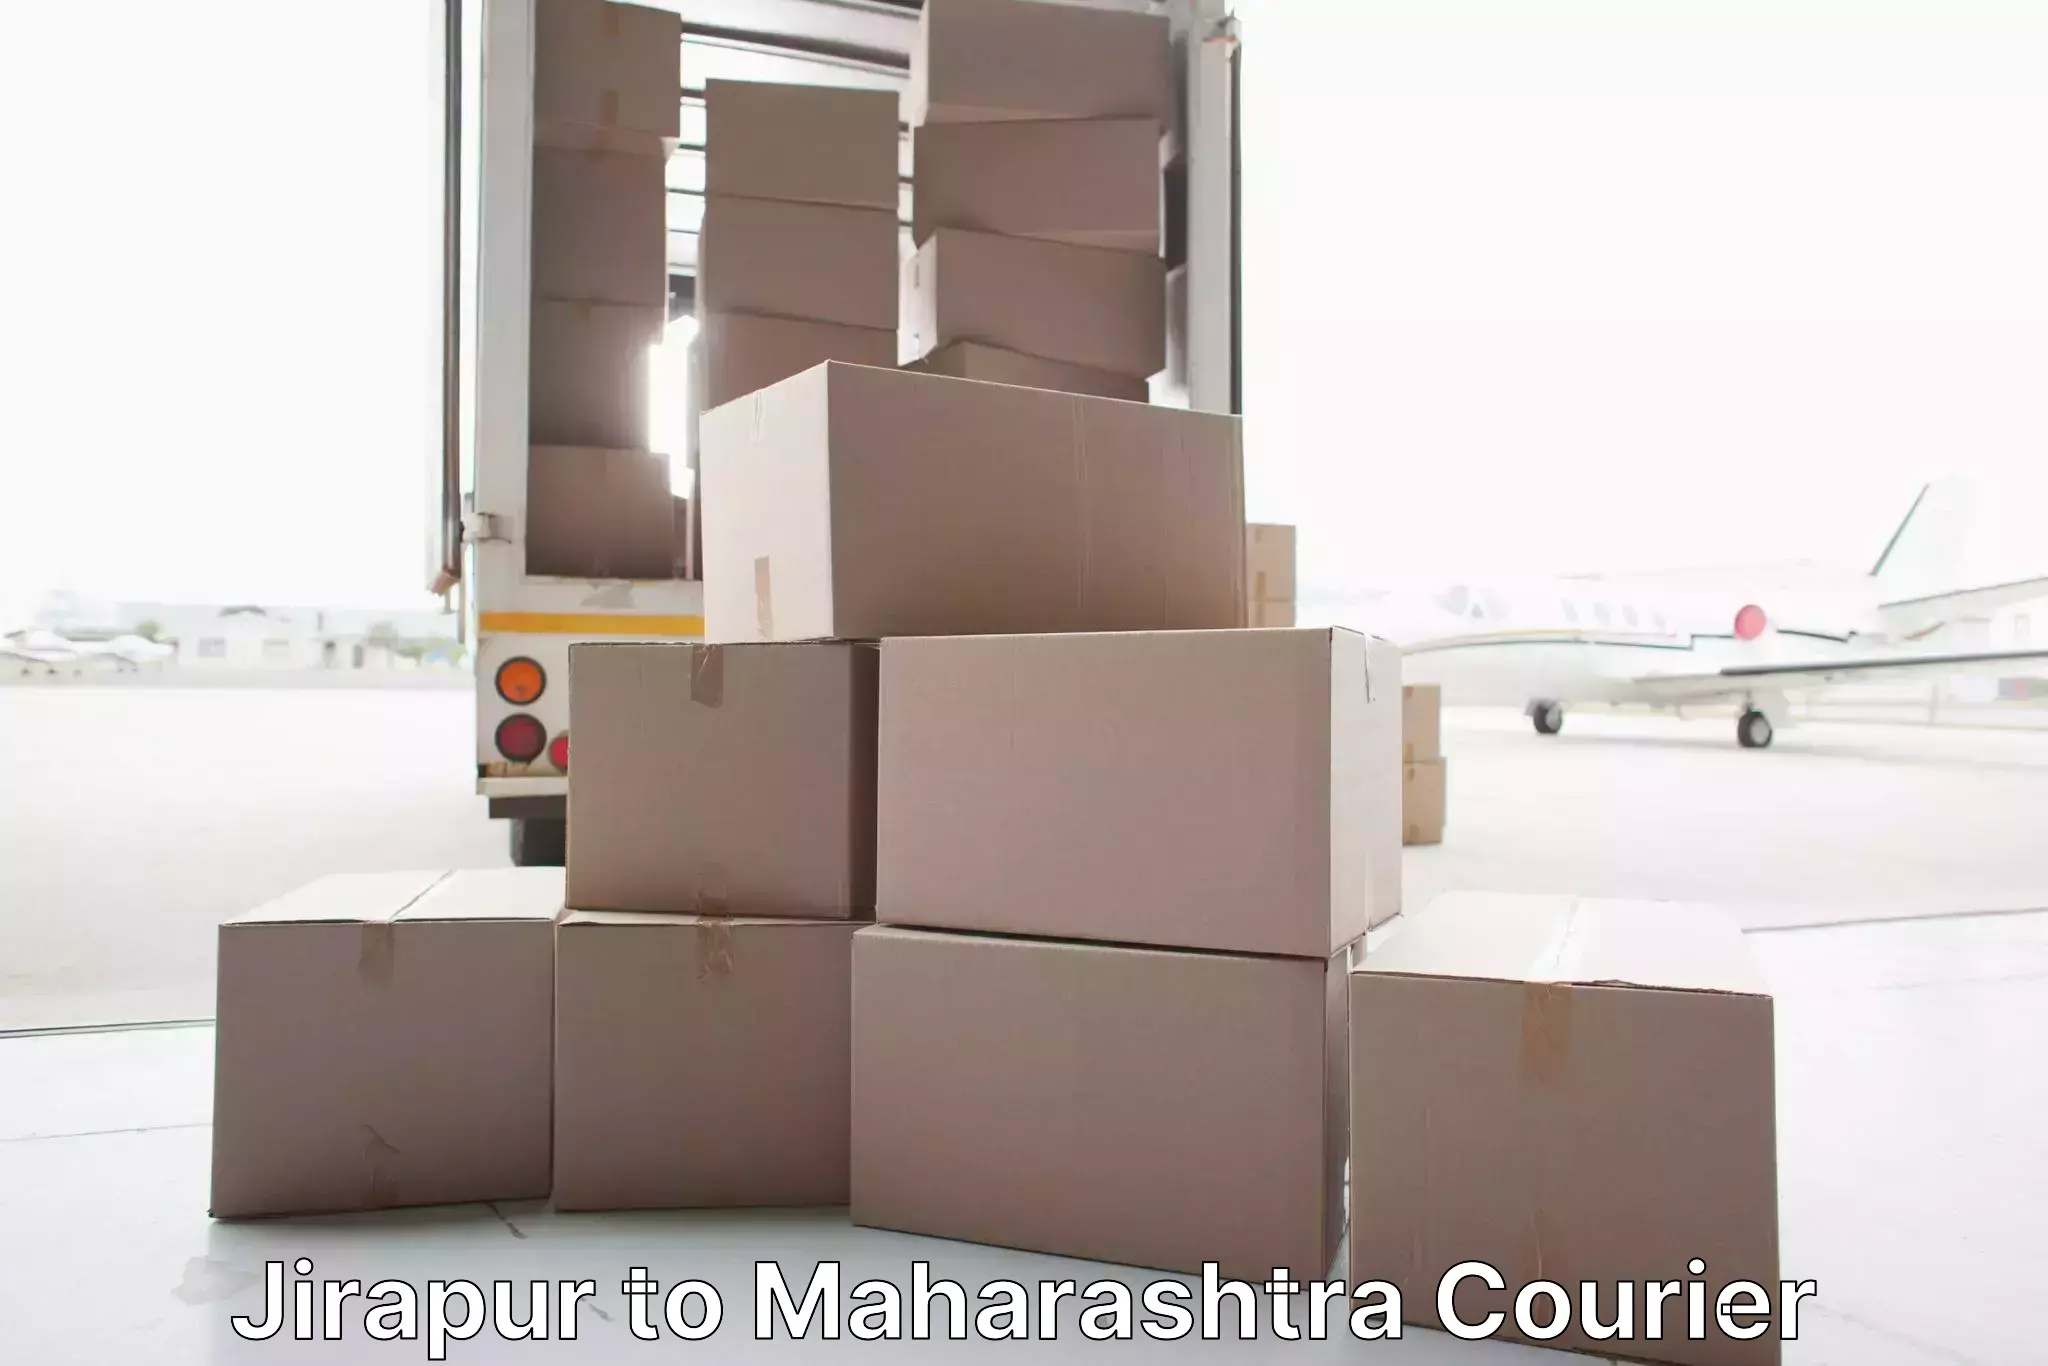 Stress-free furniture moving Jirapur to Maharashtra